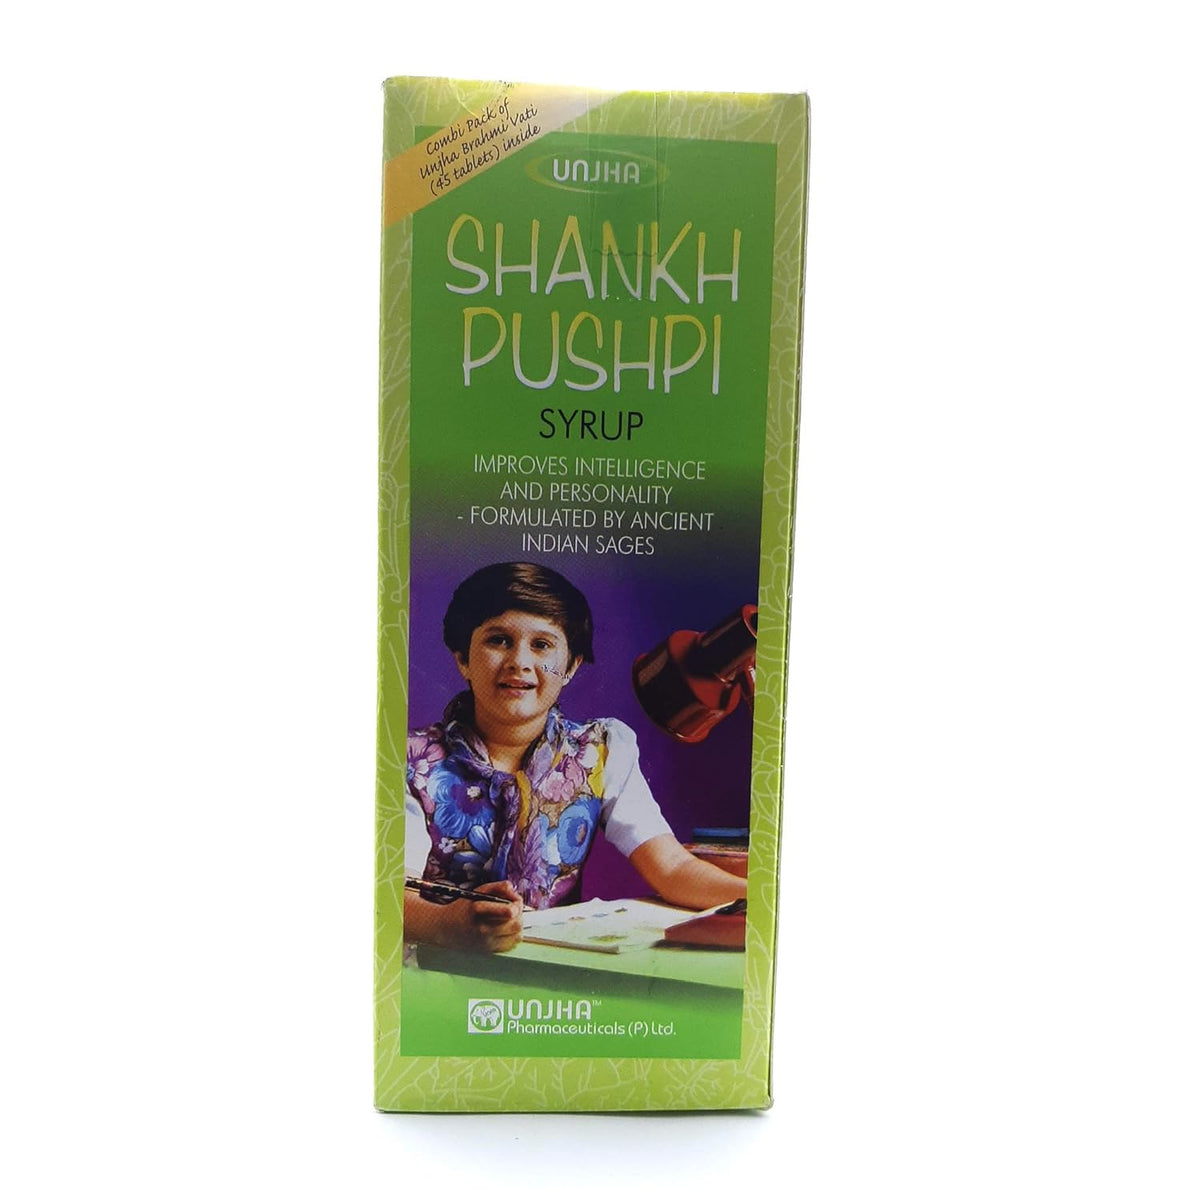 Unjha Ayurvedic Shankh pushpi Syrup Liquid 450ml